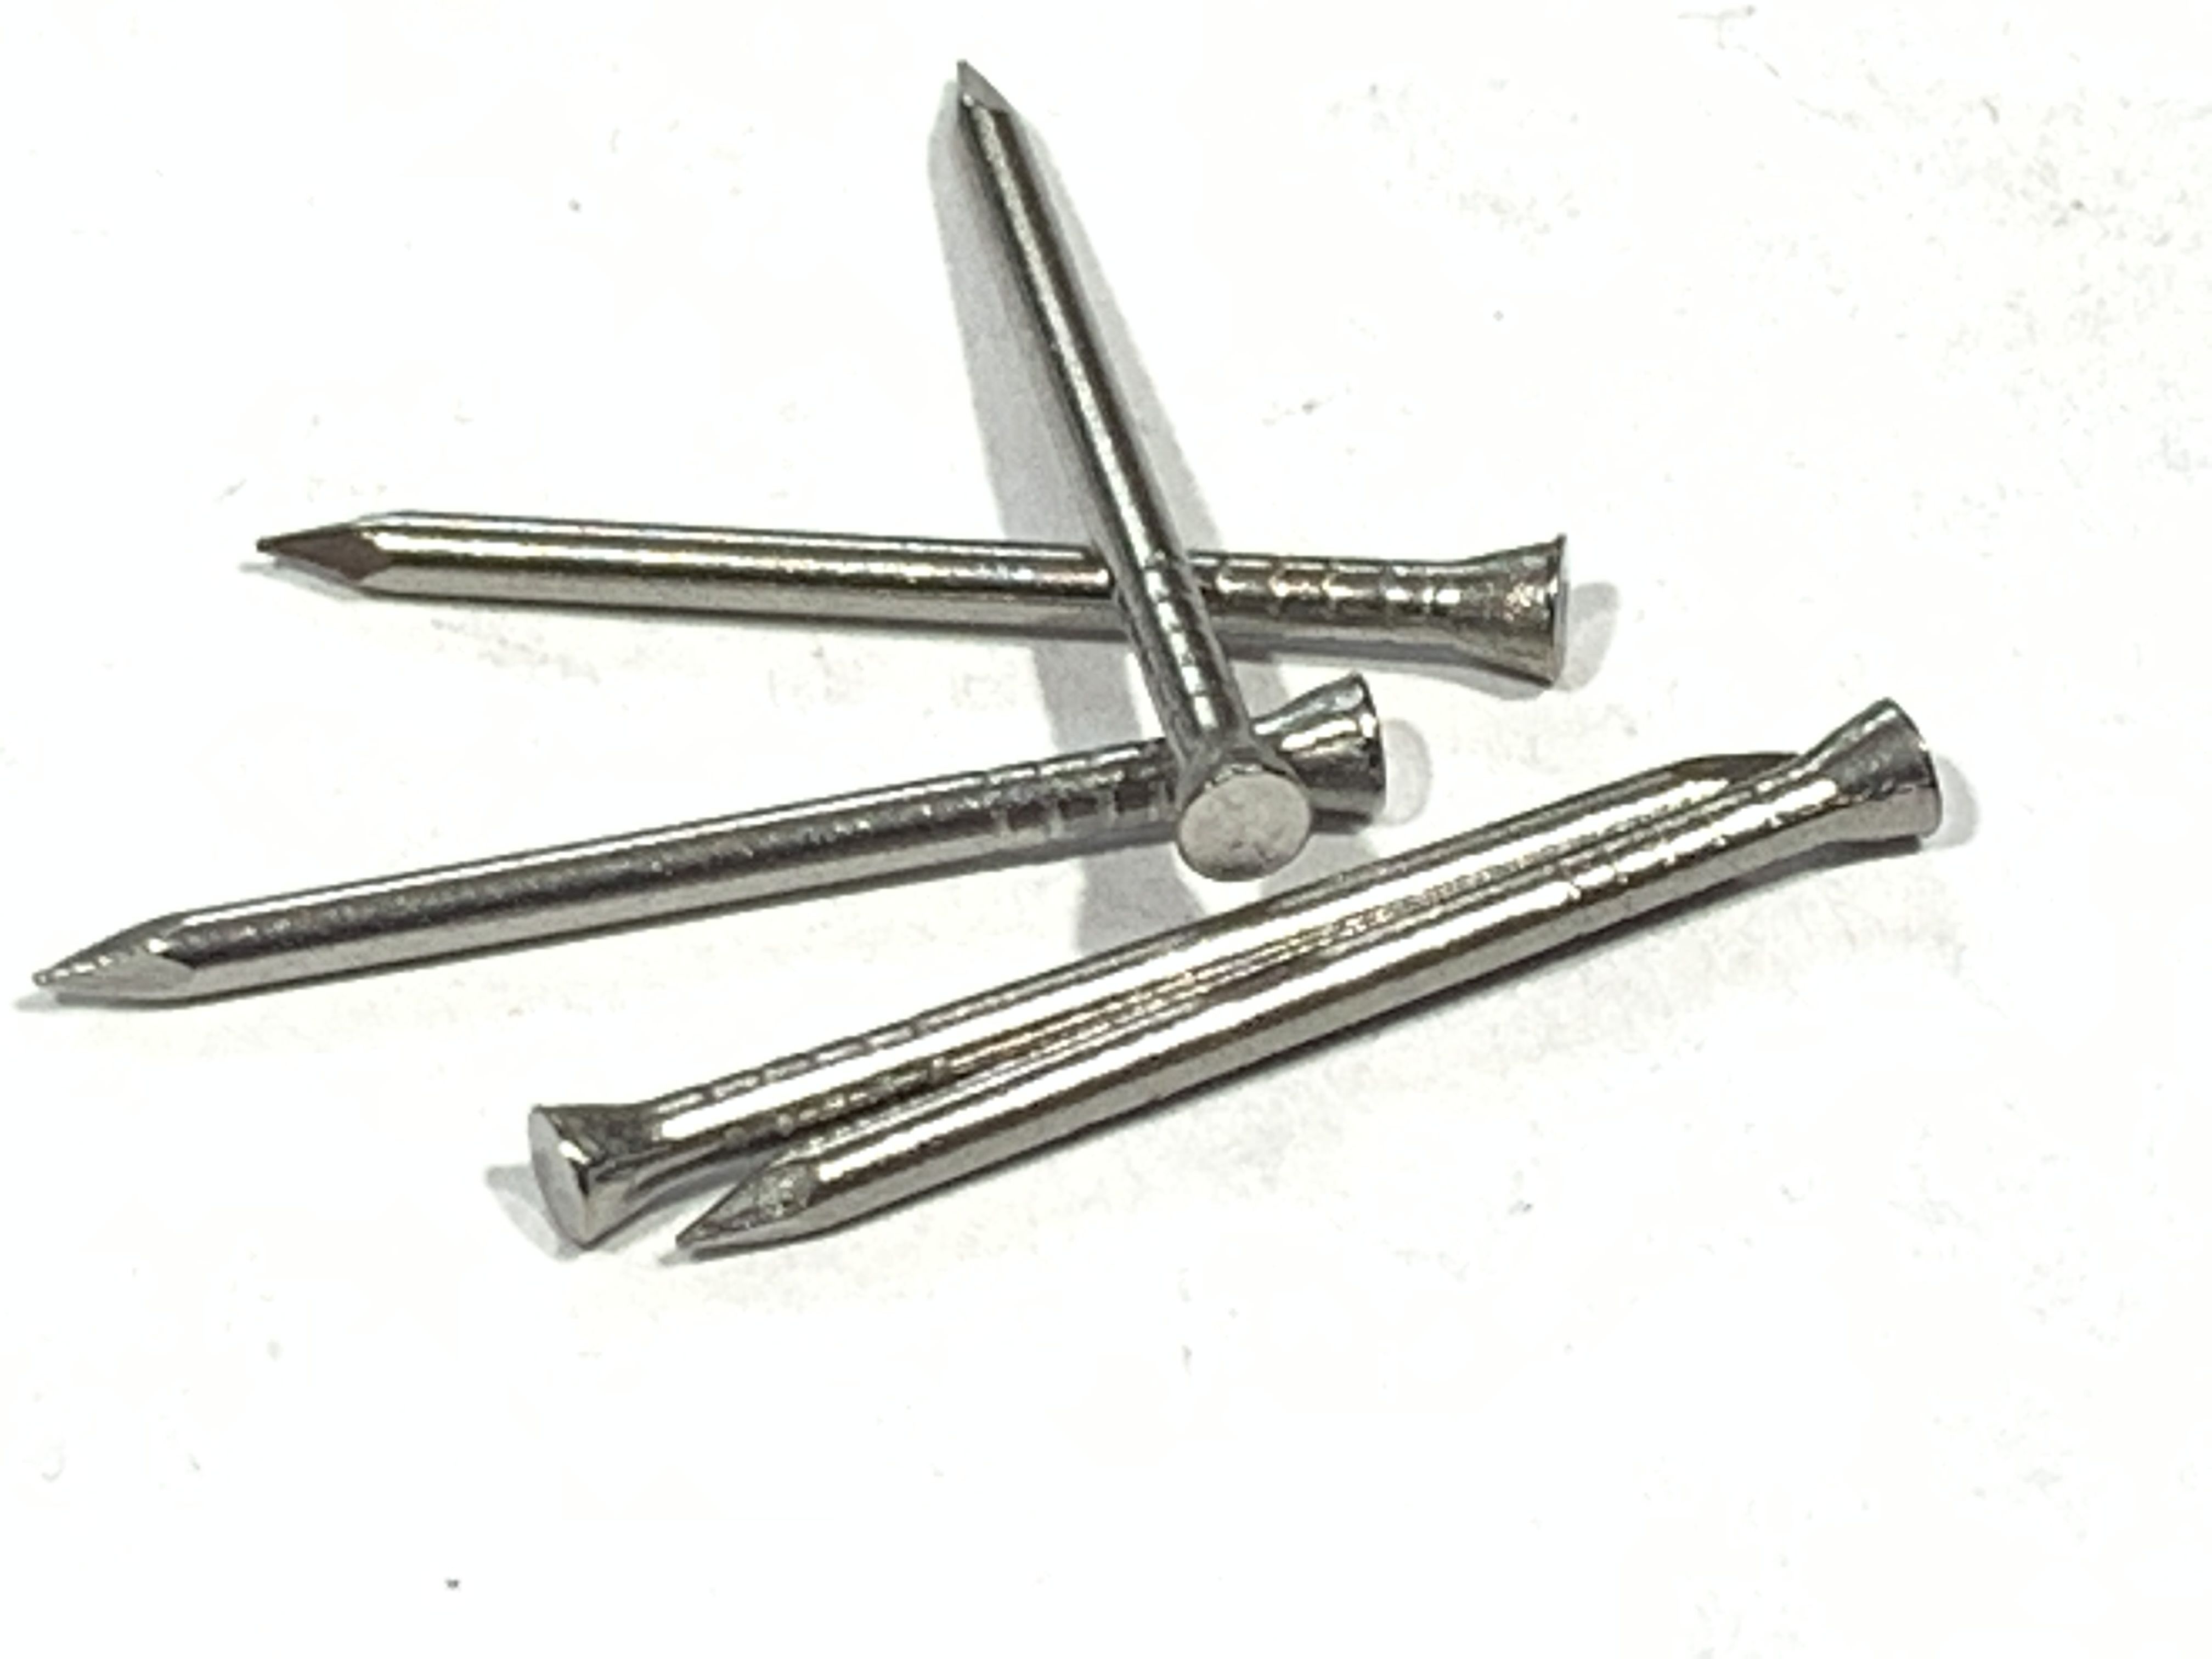 metal head pins